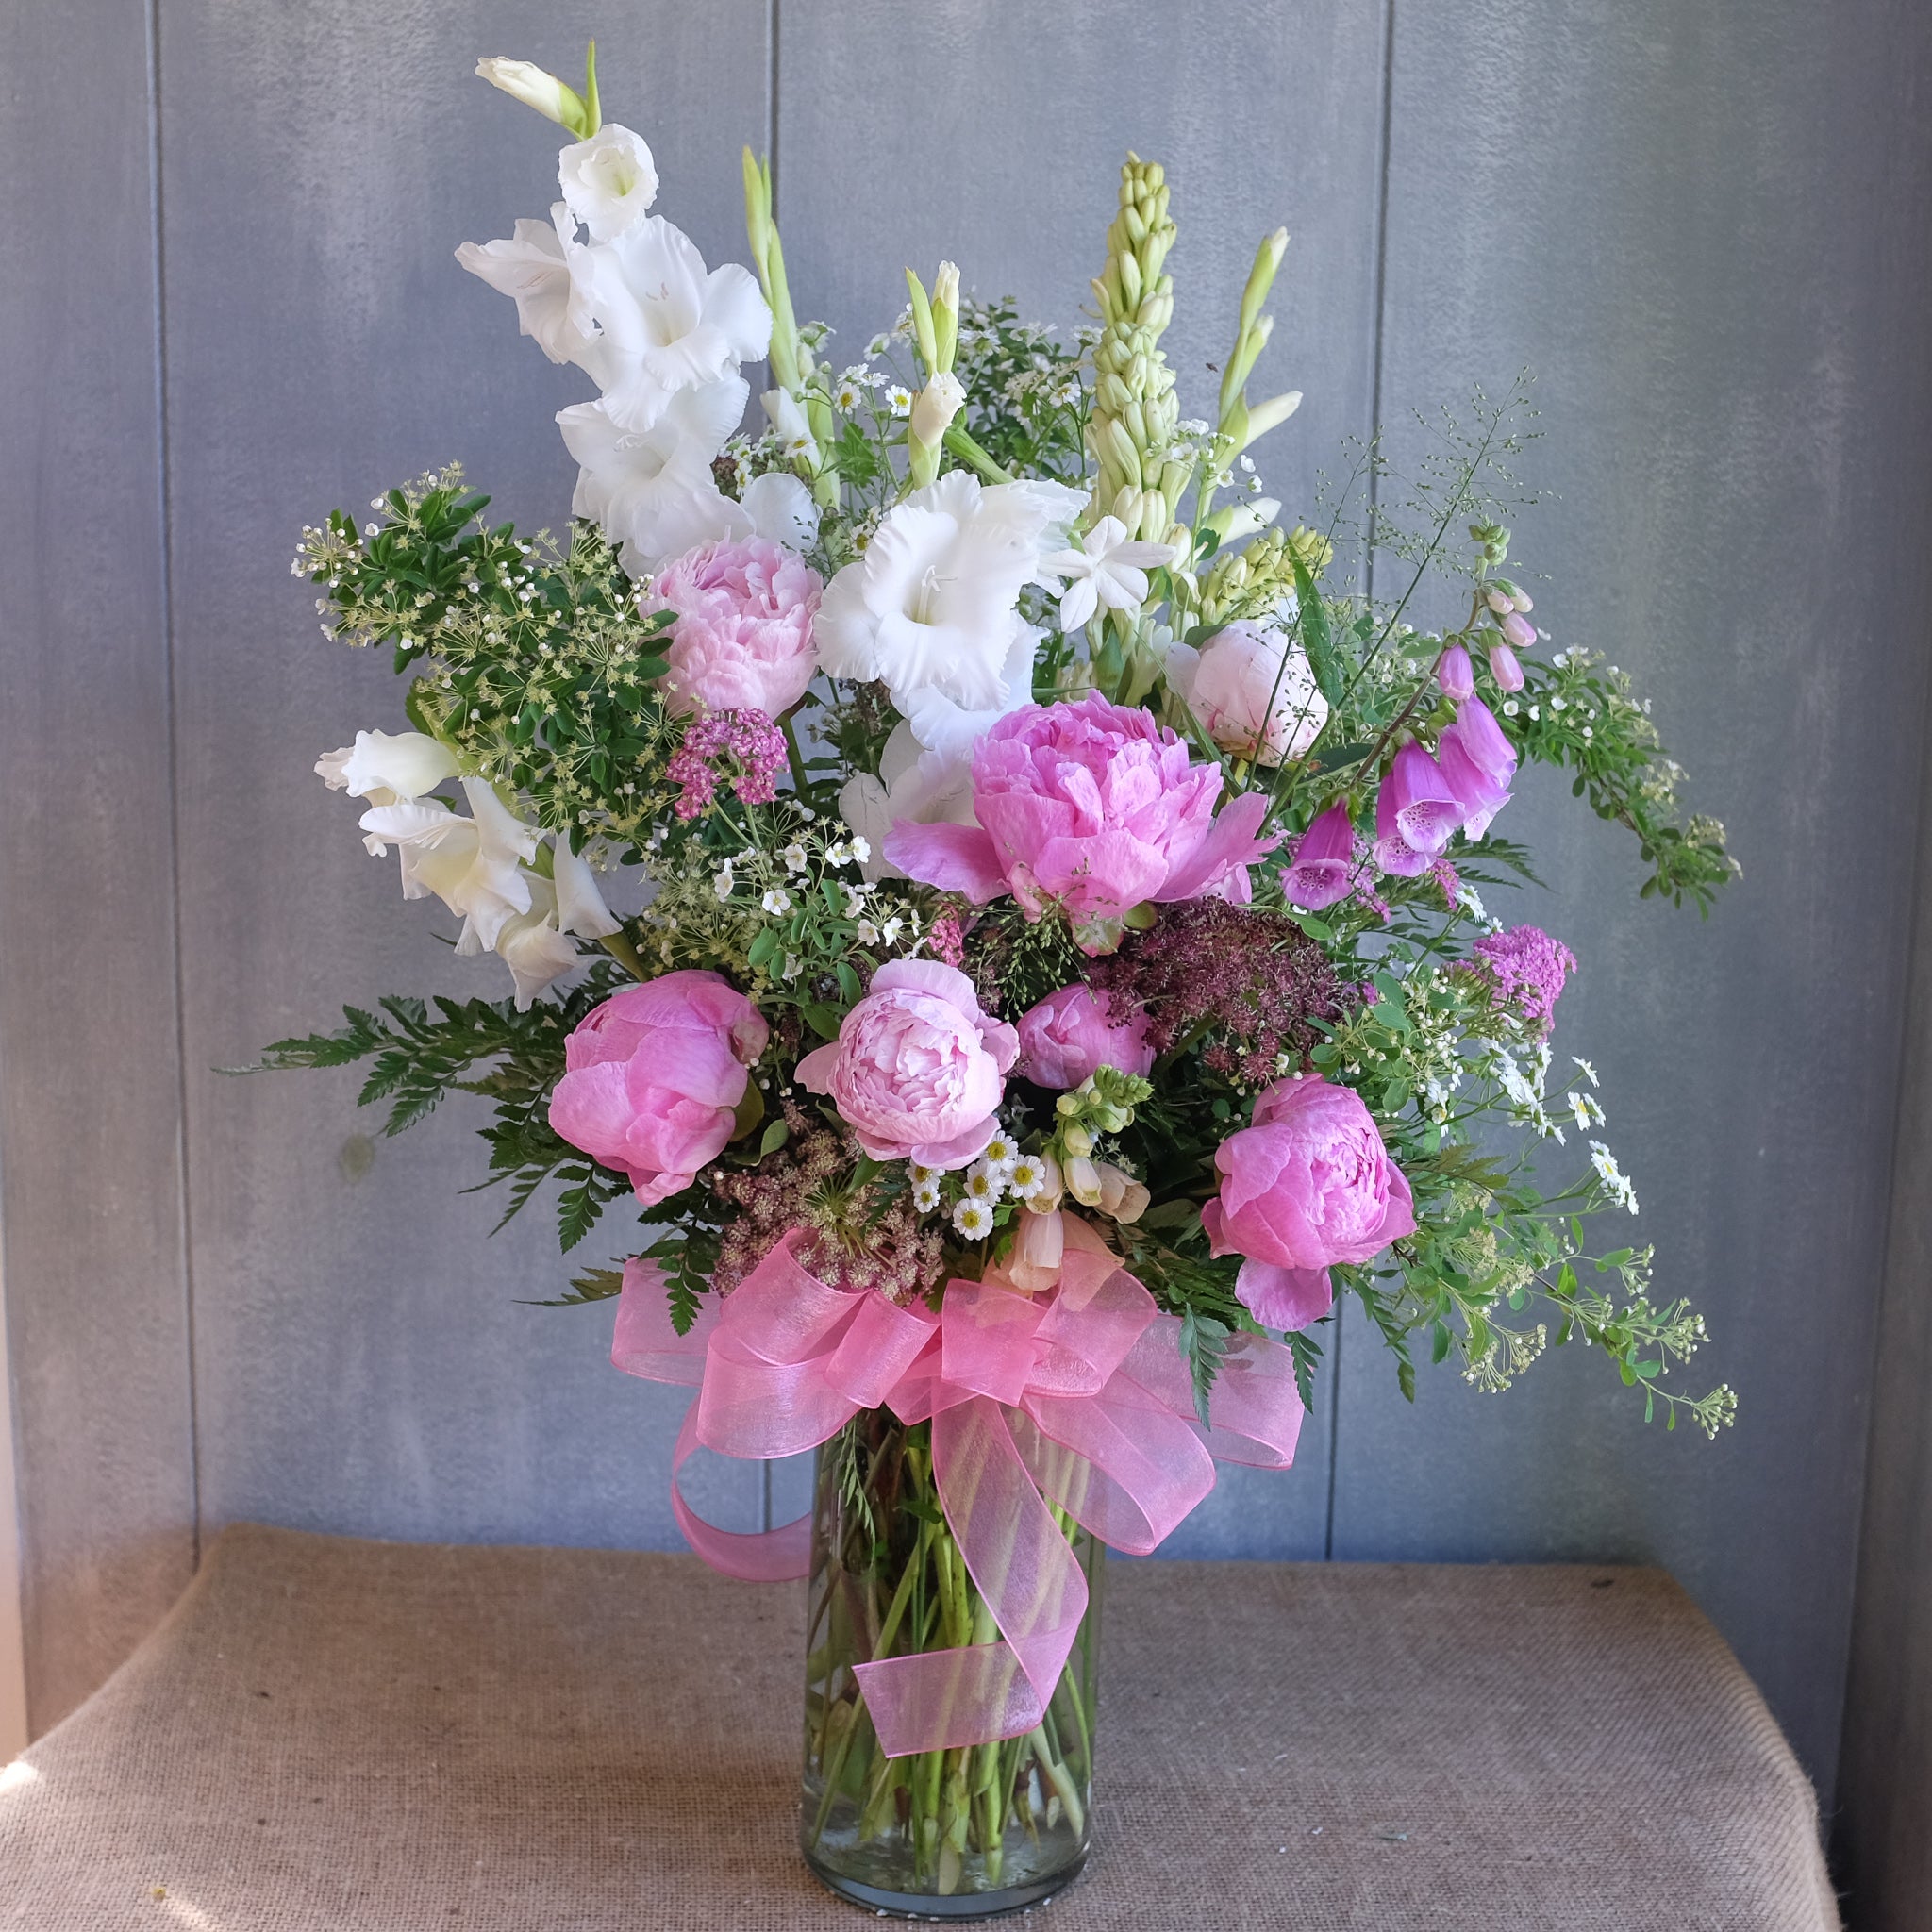 Flower bouquet by Michler Florist, Lexington KY